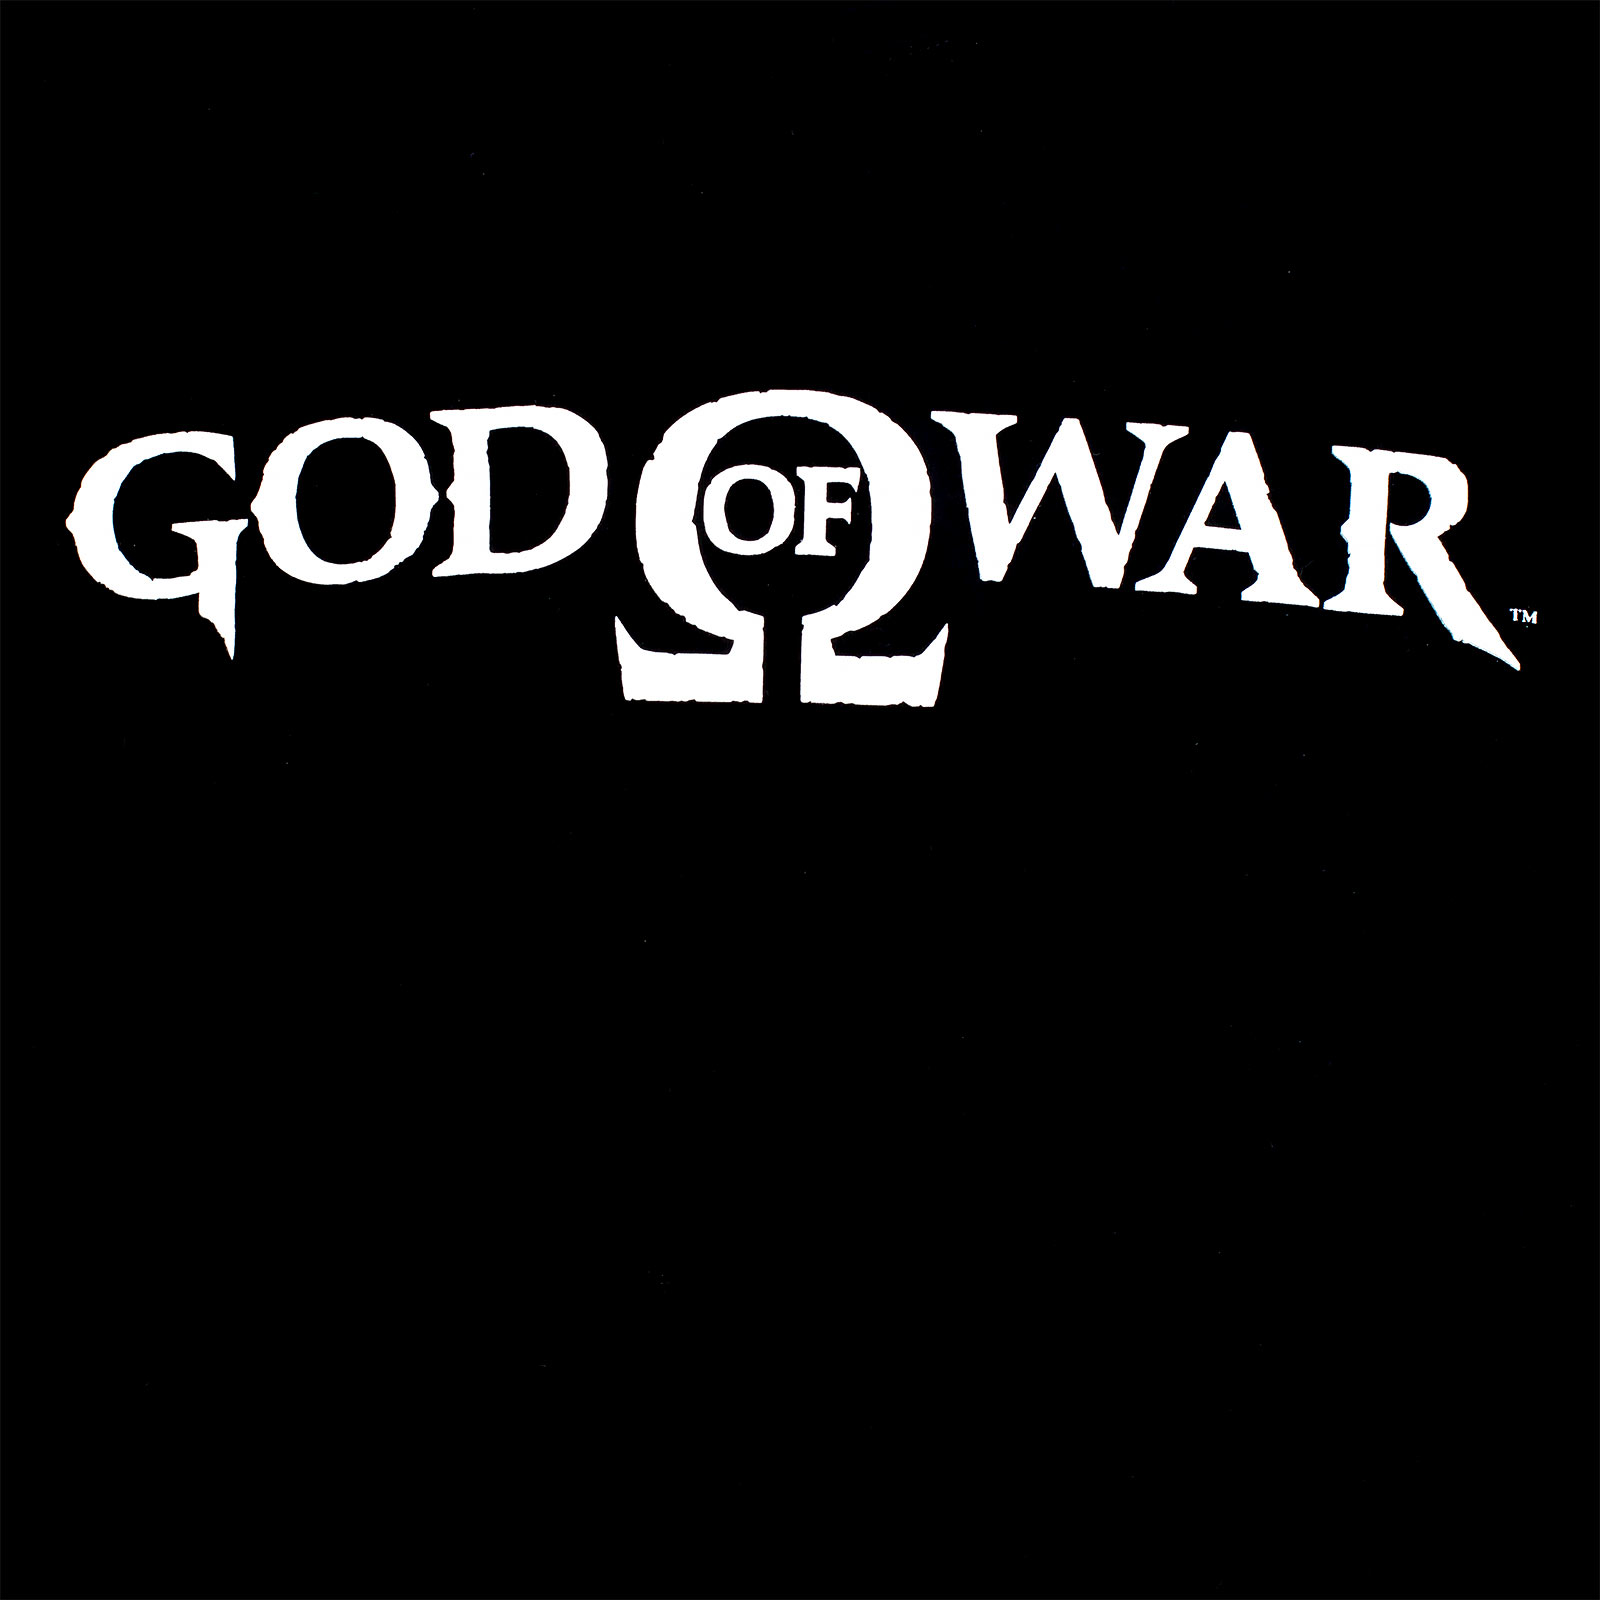 God of War - T-shirt logo noir